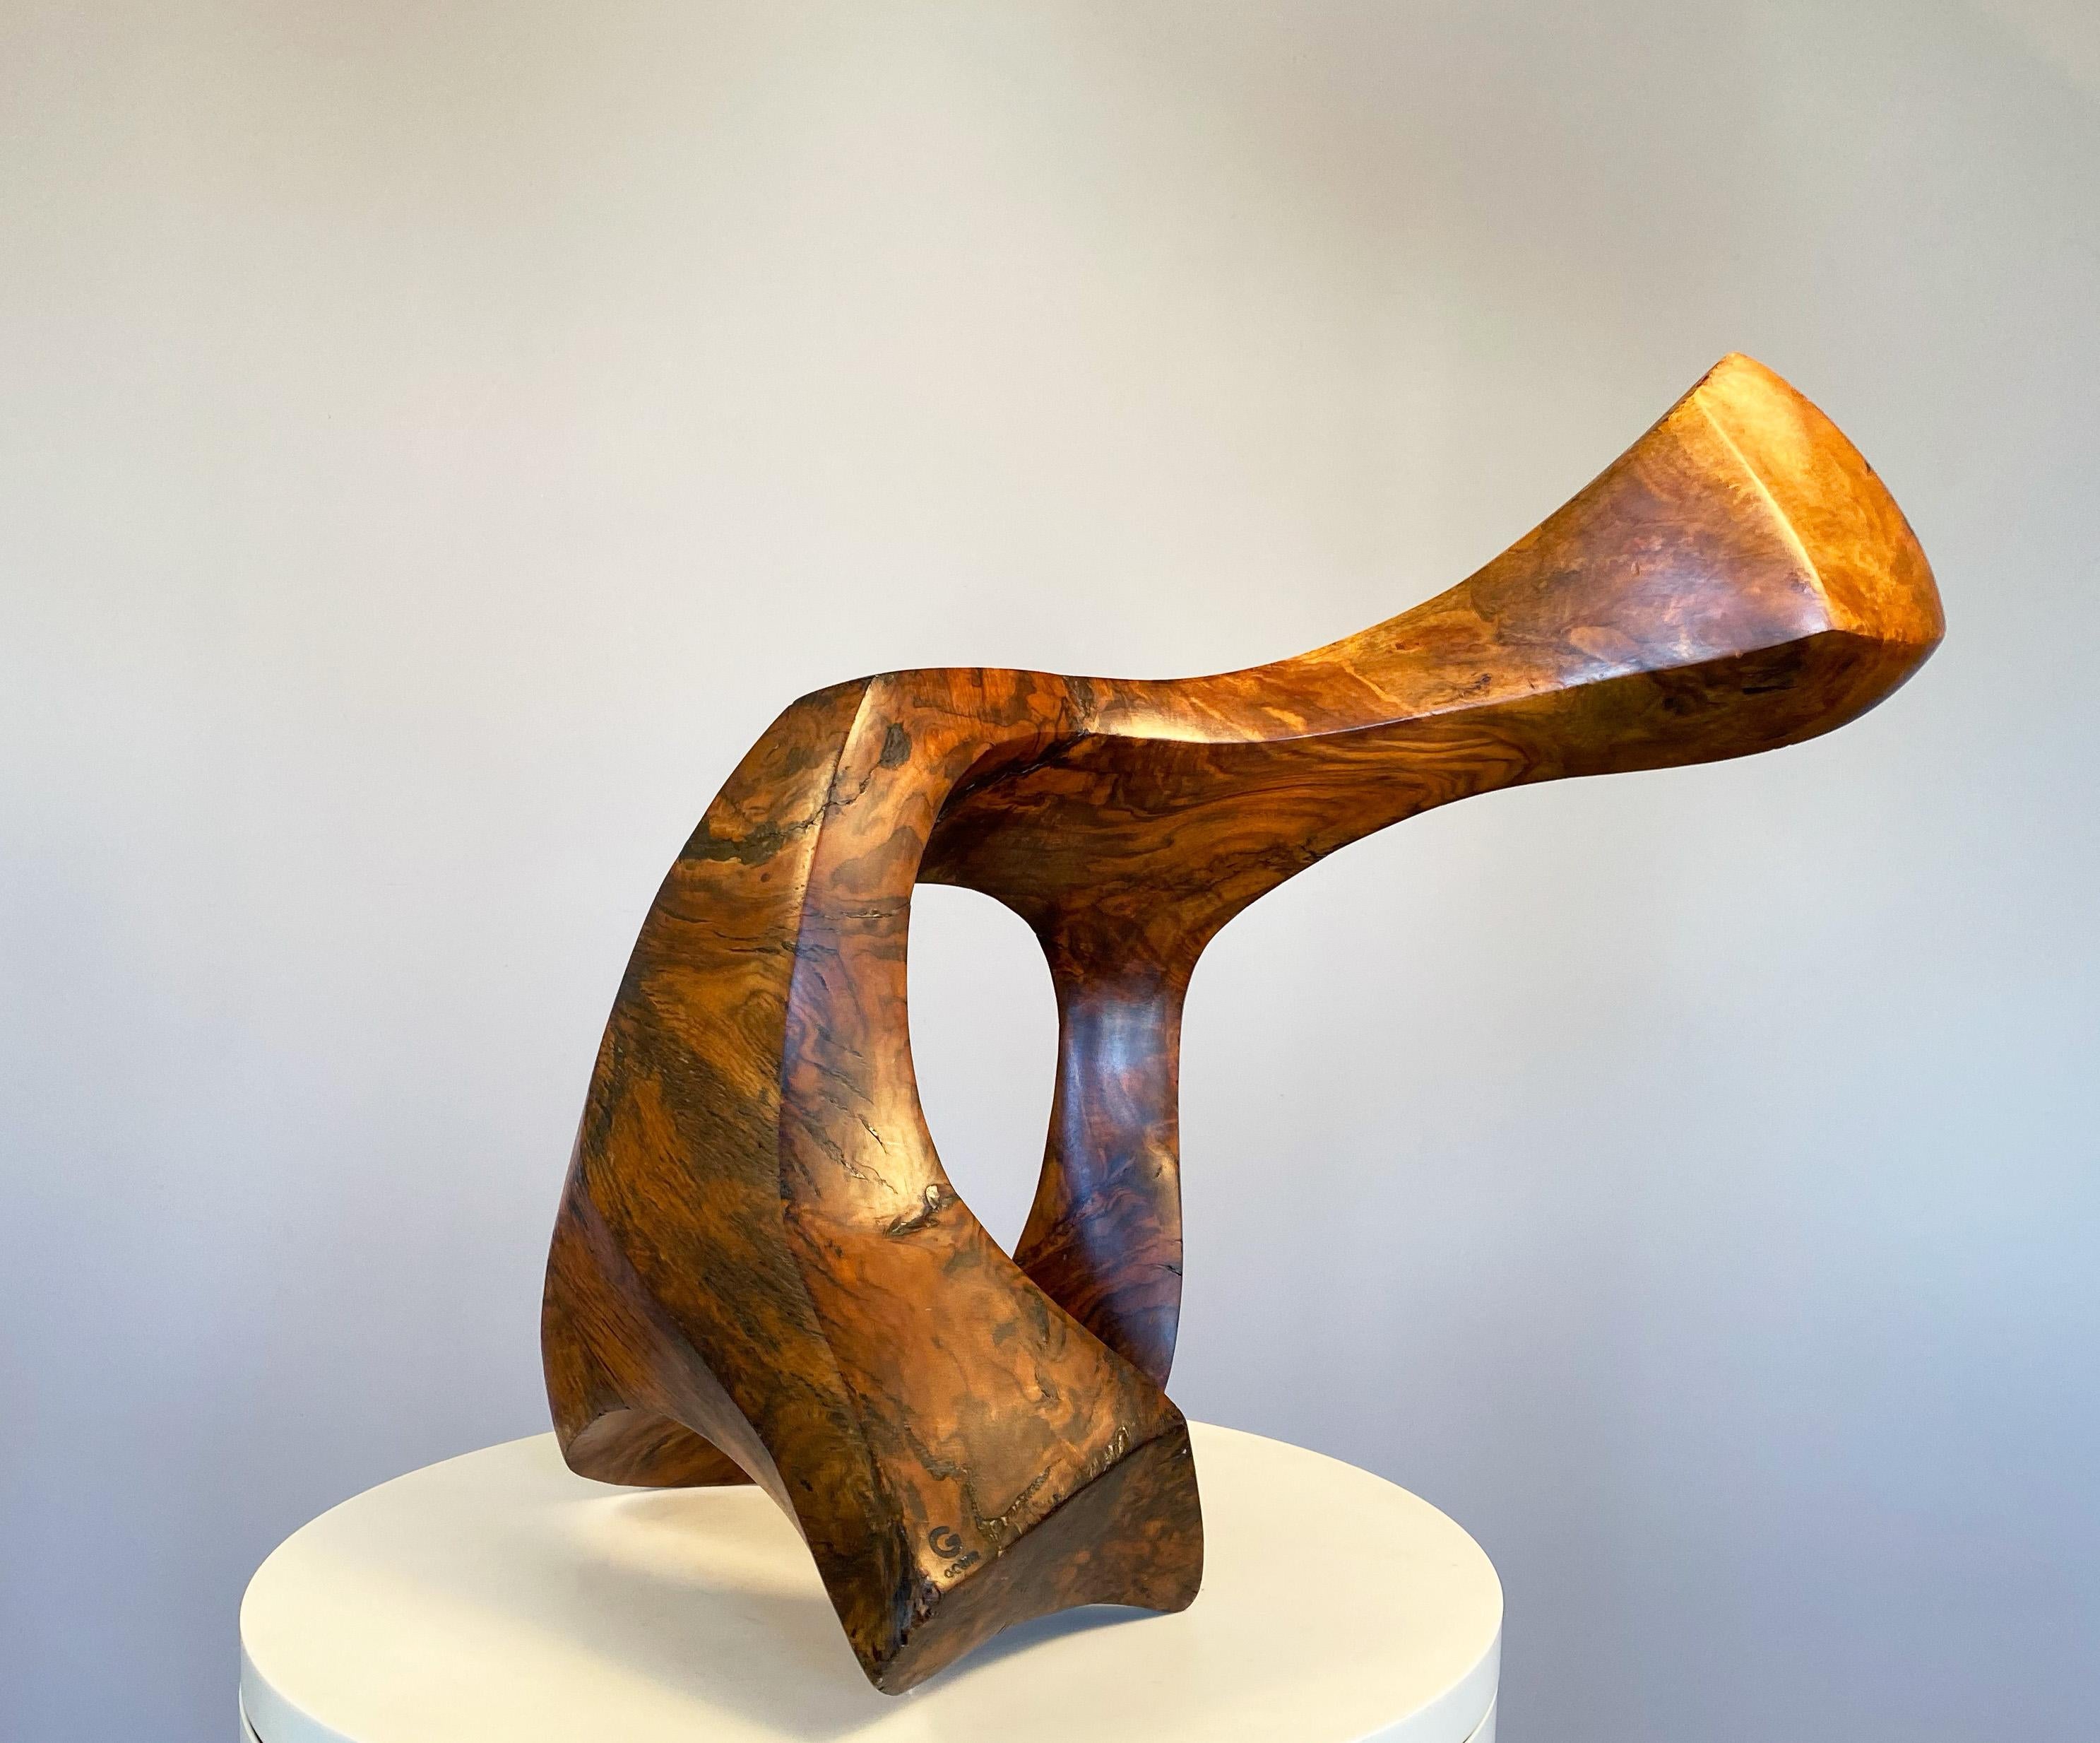 Joseph Goethe  Abstract Sculpture - Reclining Form wood sculpture